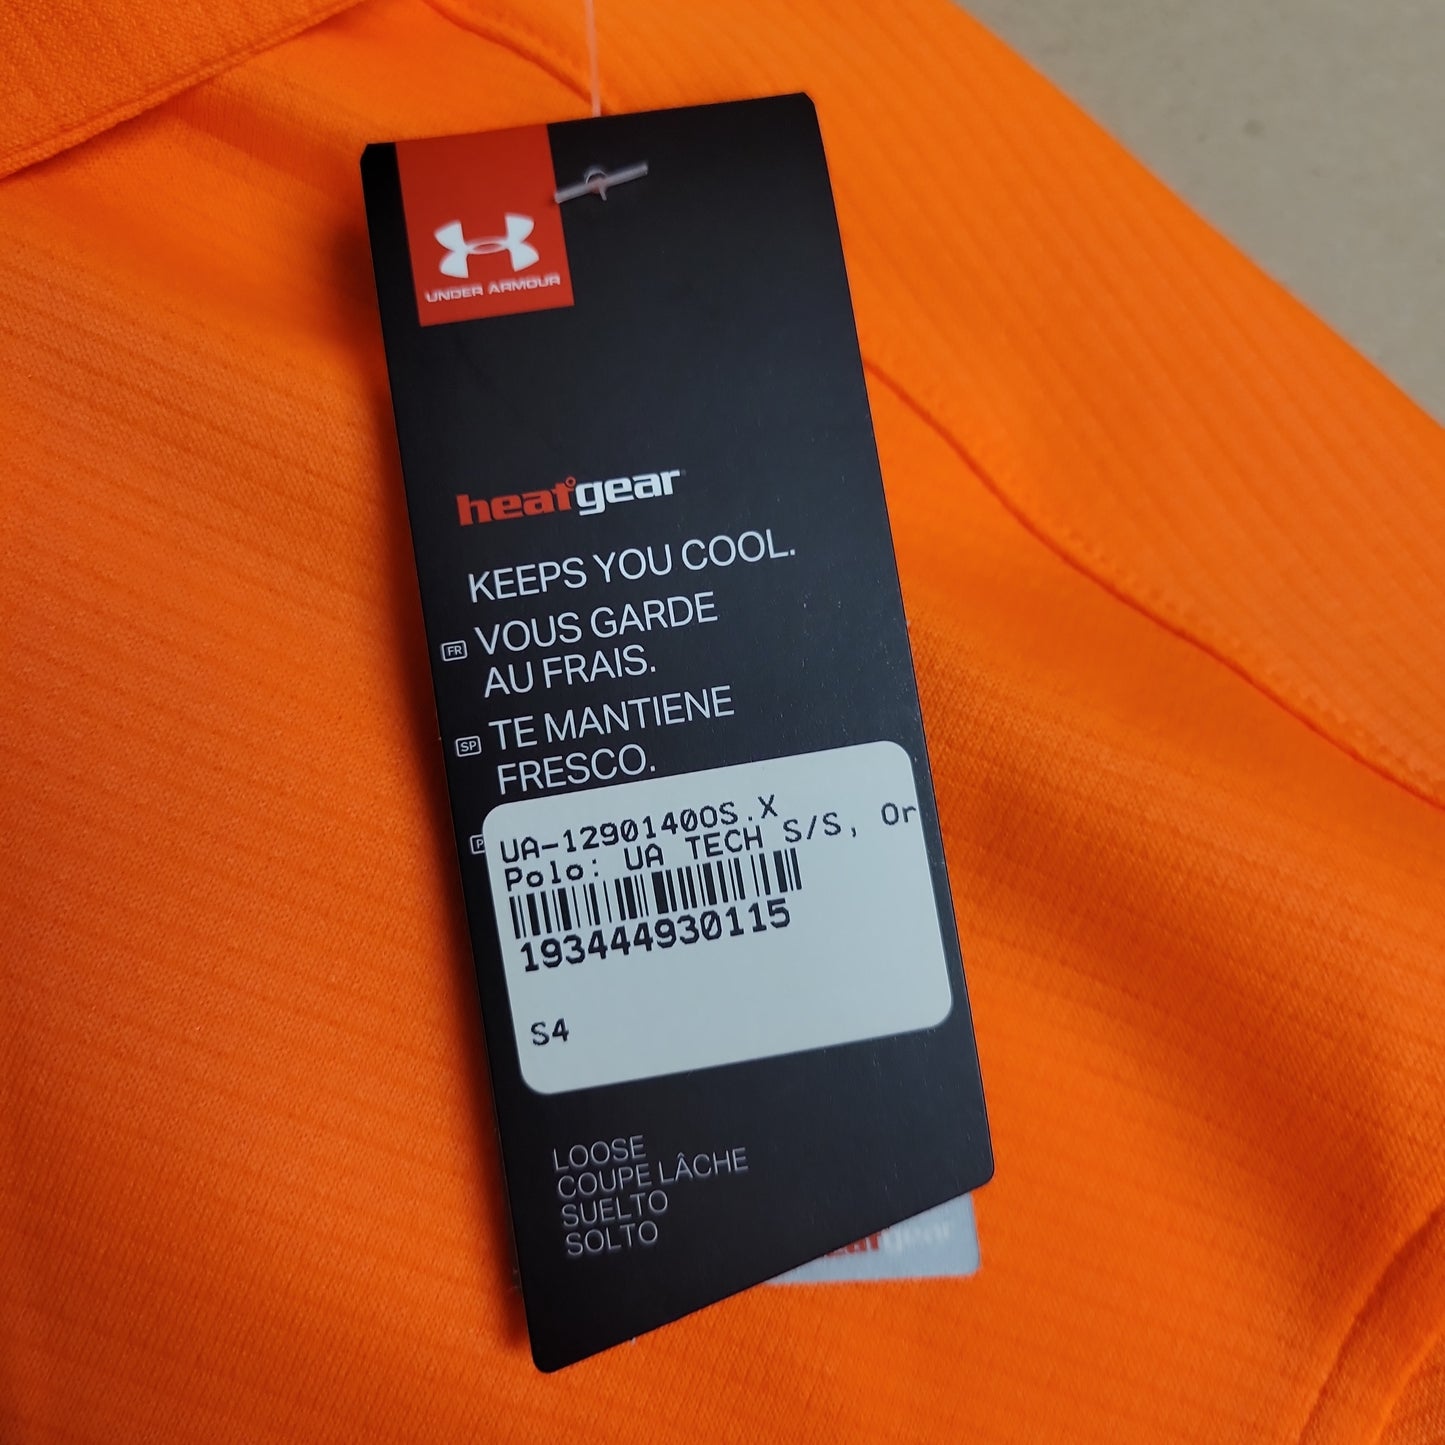 Men's Under Armour Short Sleeve Polo TECH Orange, Size XL 1290140-841-XL